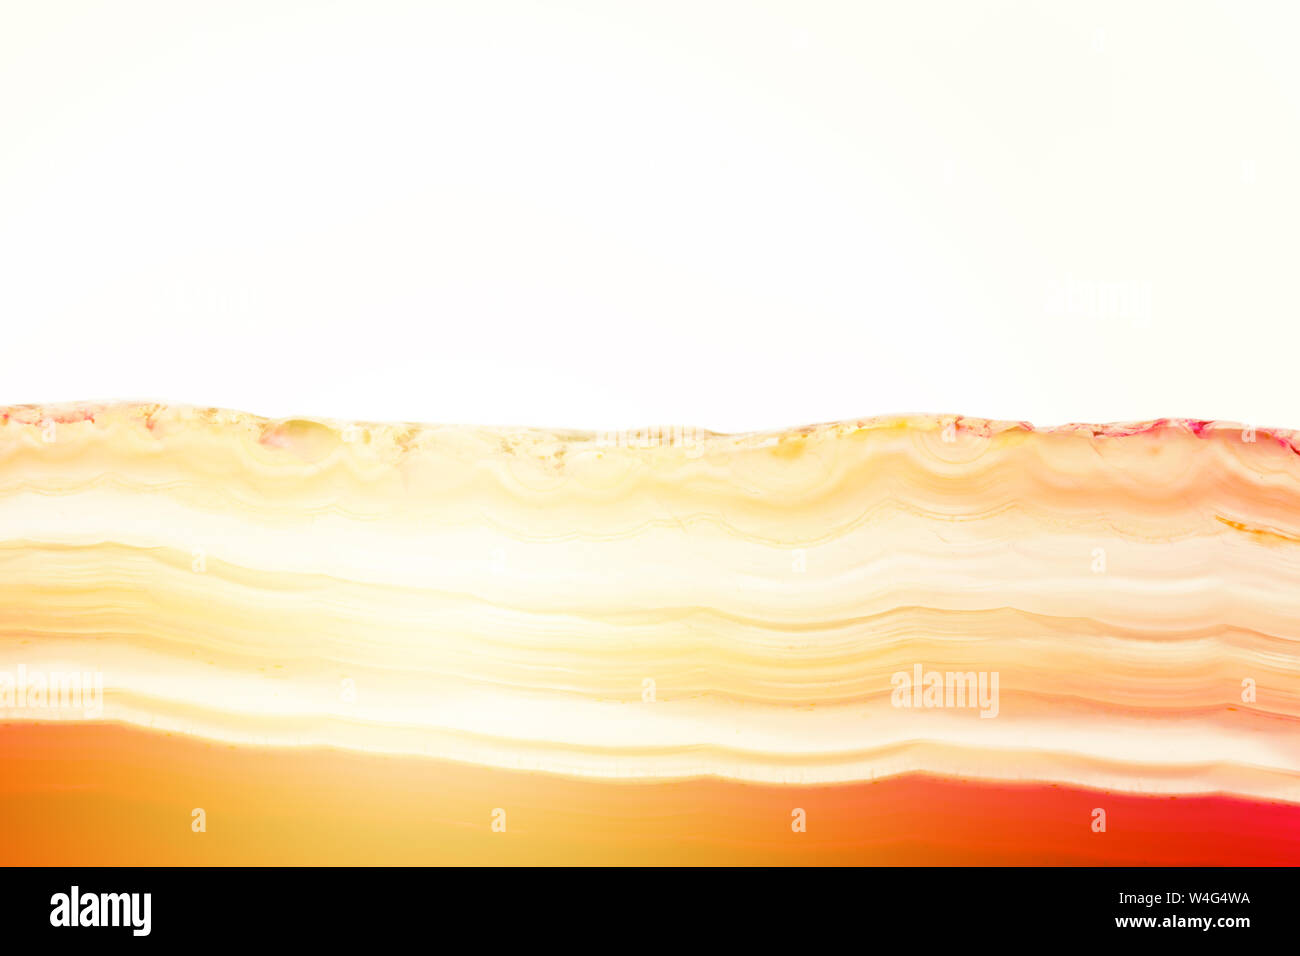 Abstract sfondo rosso e arancione a strisce di agata minerale sezione trasversale con sunbeam isolati su sfondo bianco Foto Stock